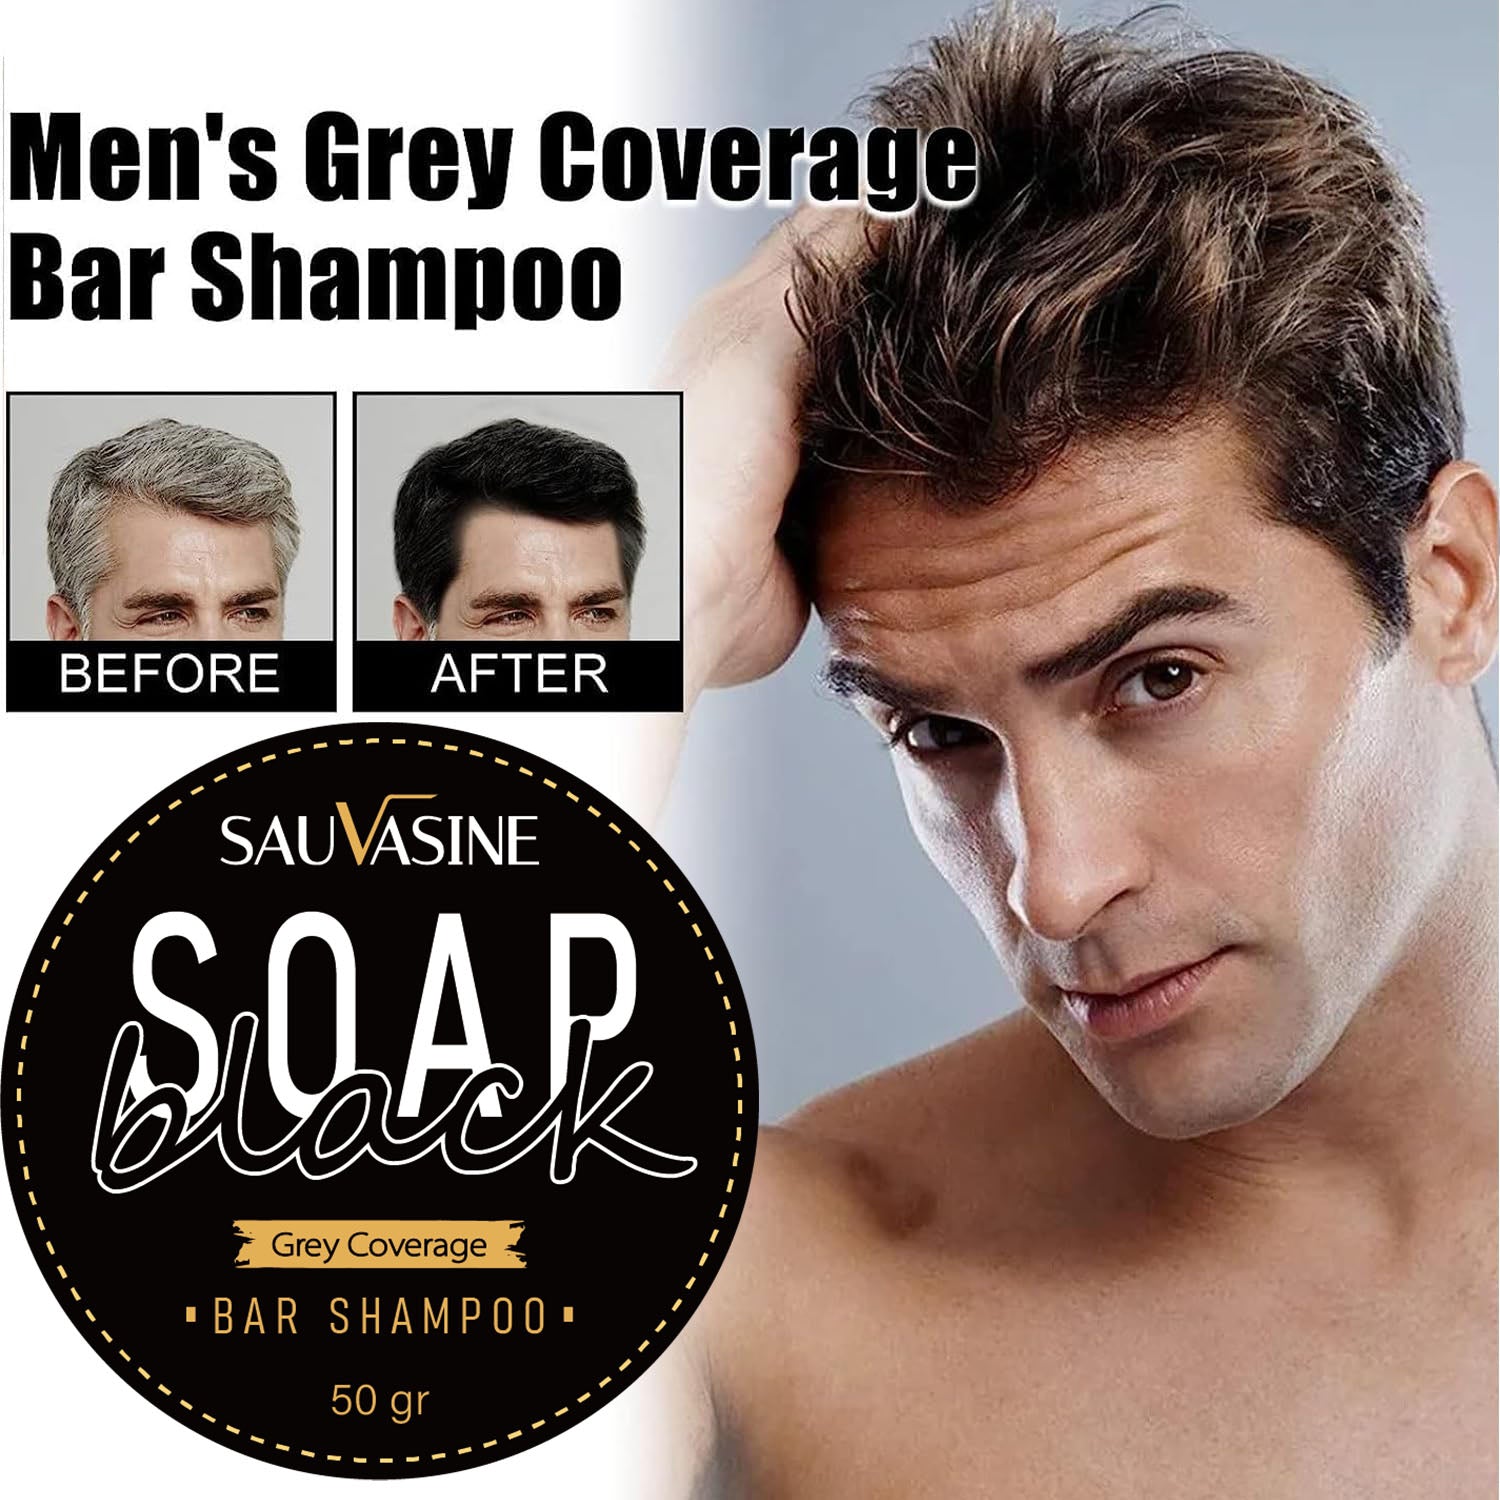 Natural Grey Hair Removal Soap